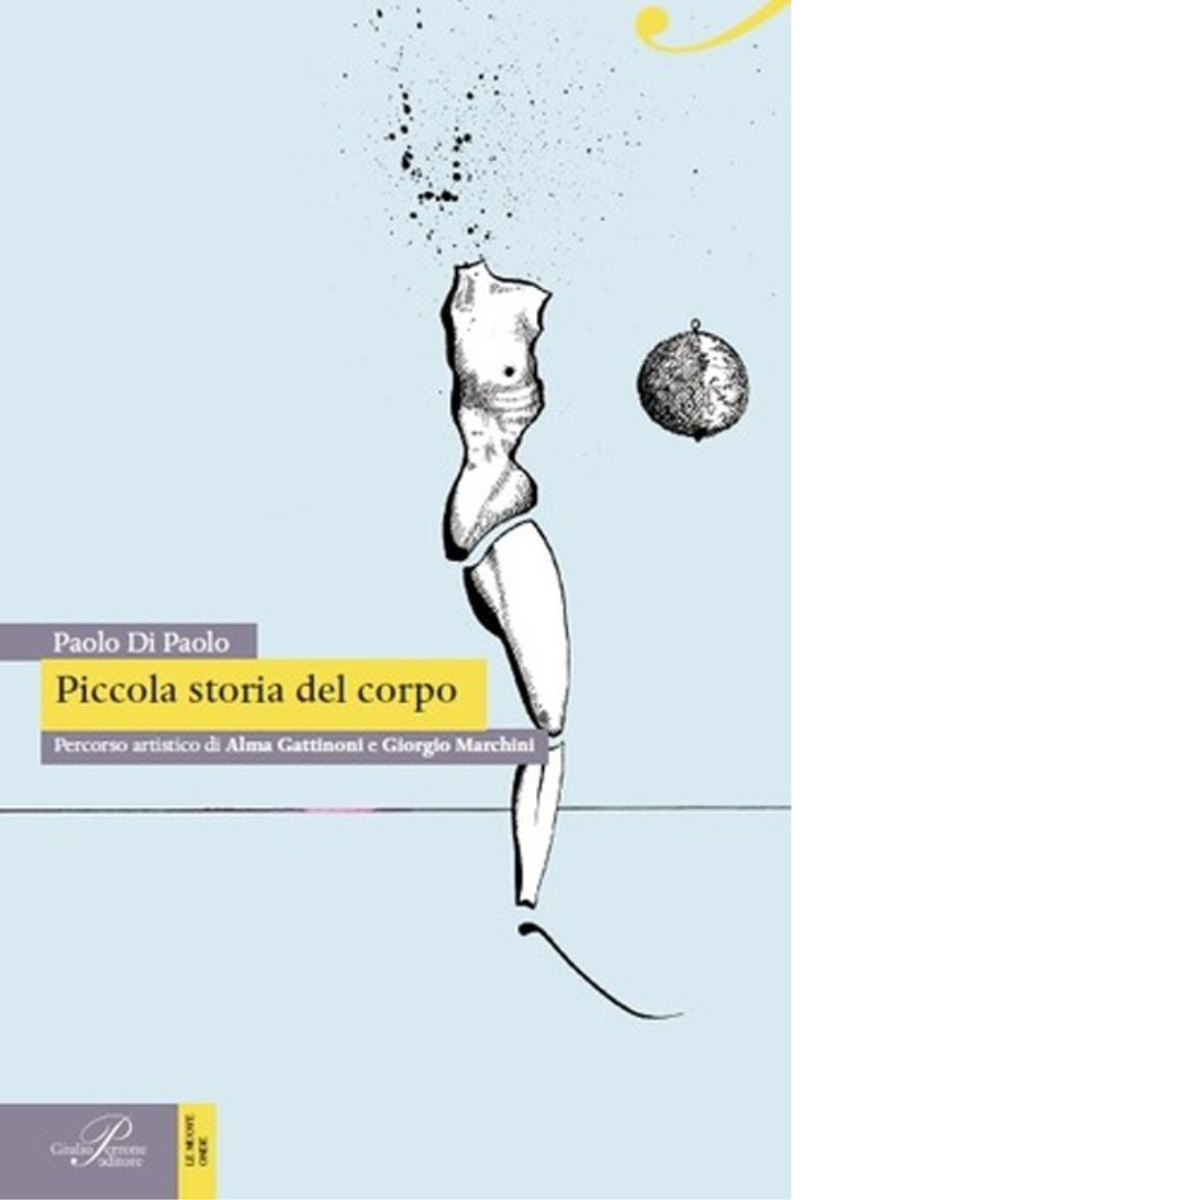 Piccola storia del corpo - Paolo Di Paolo - Perrone editore, 2014 libro usato